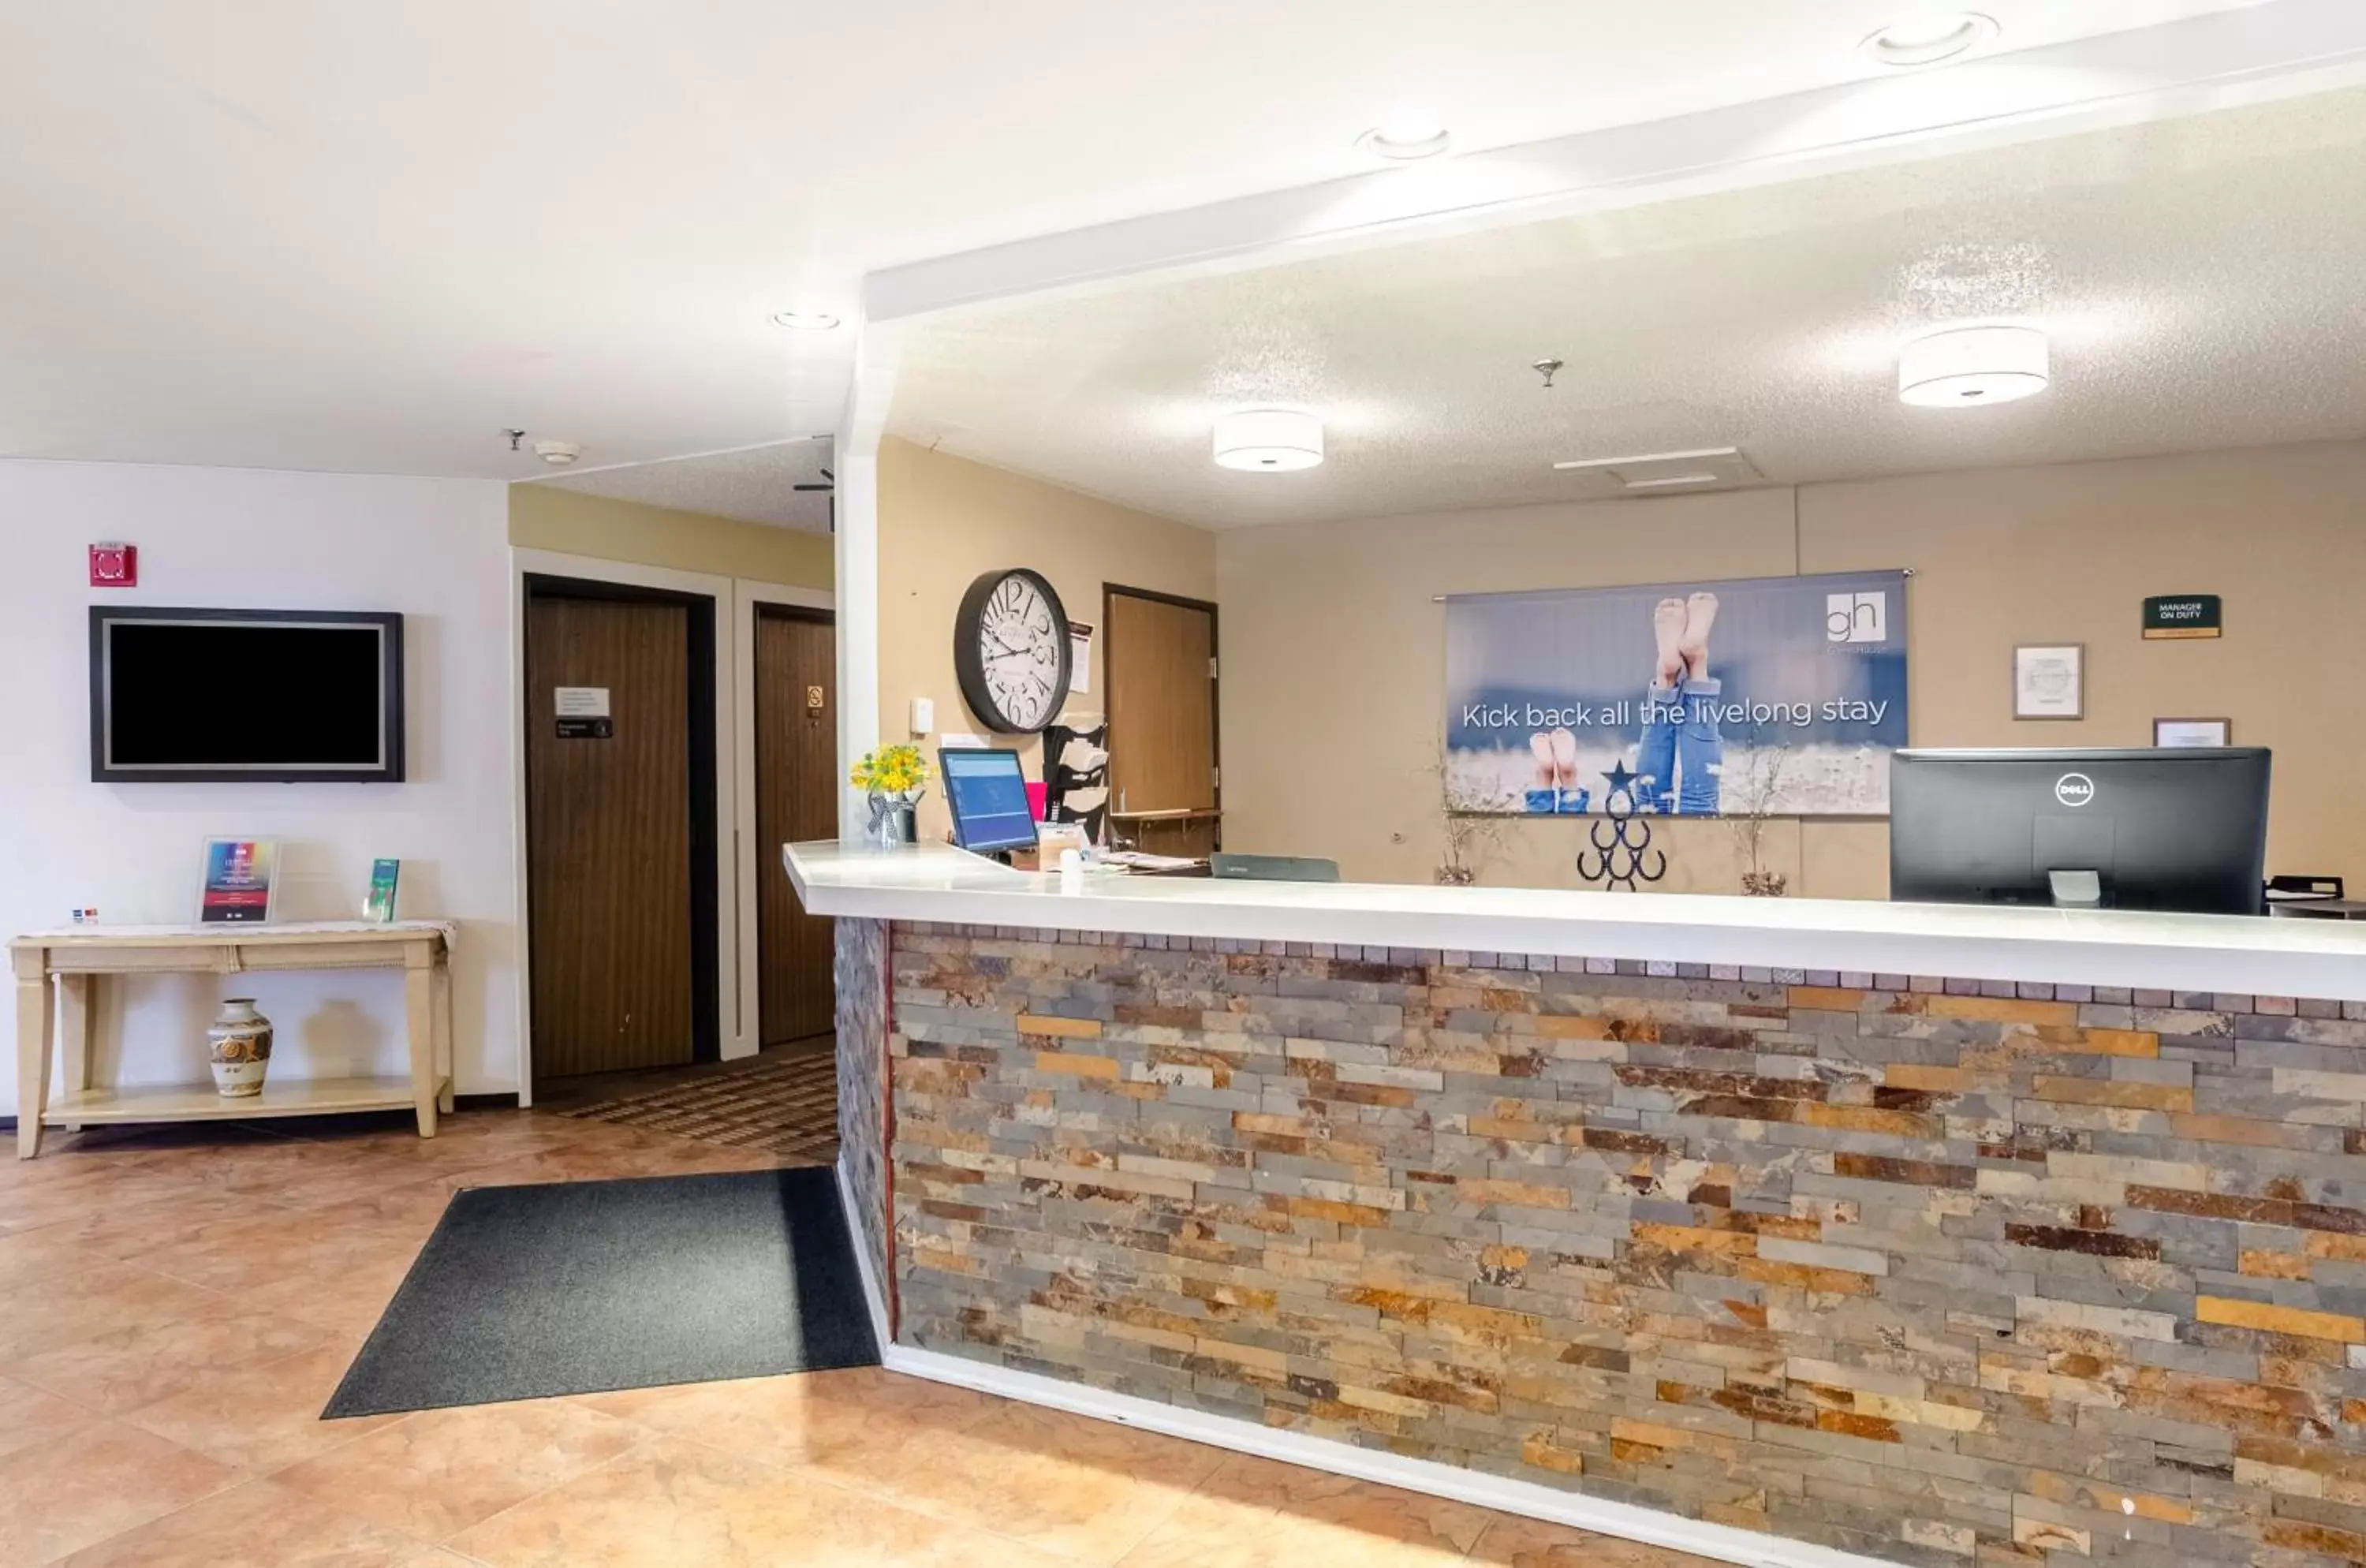 Lobby or reception, Lobby/Reception in Cheyenne Guest Inn